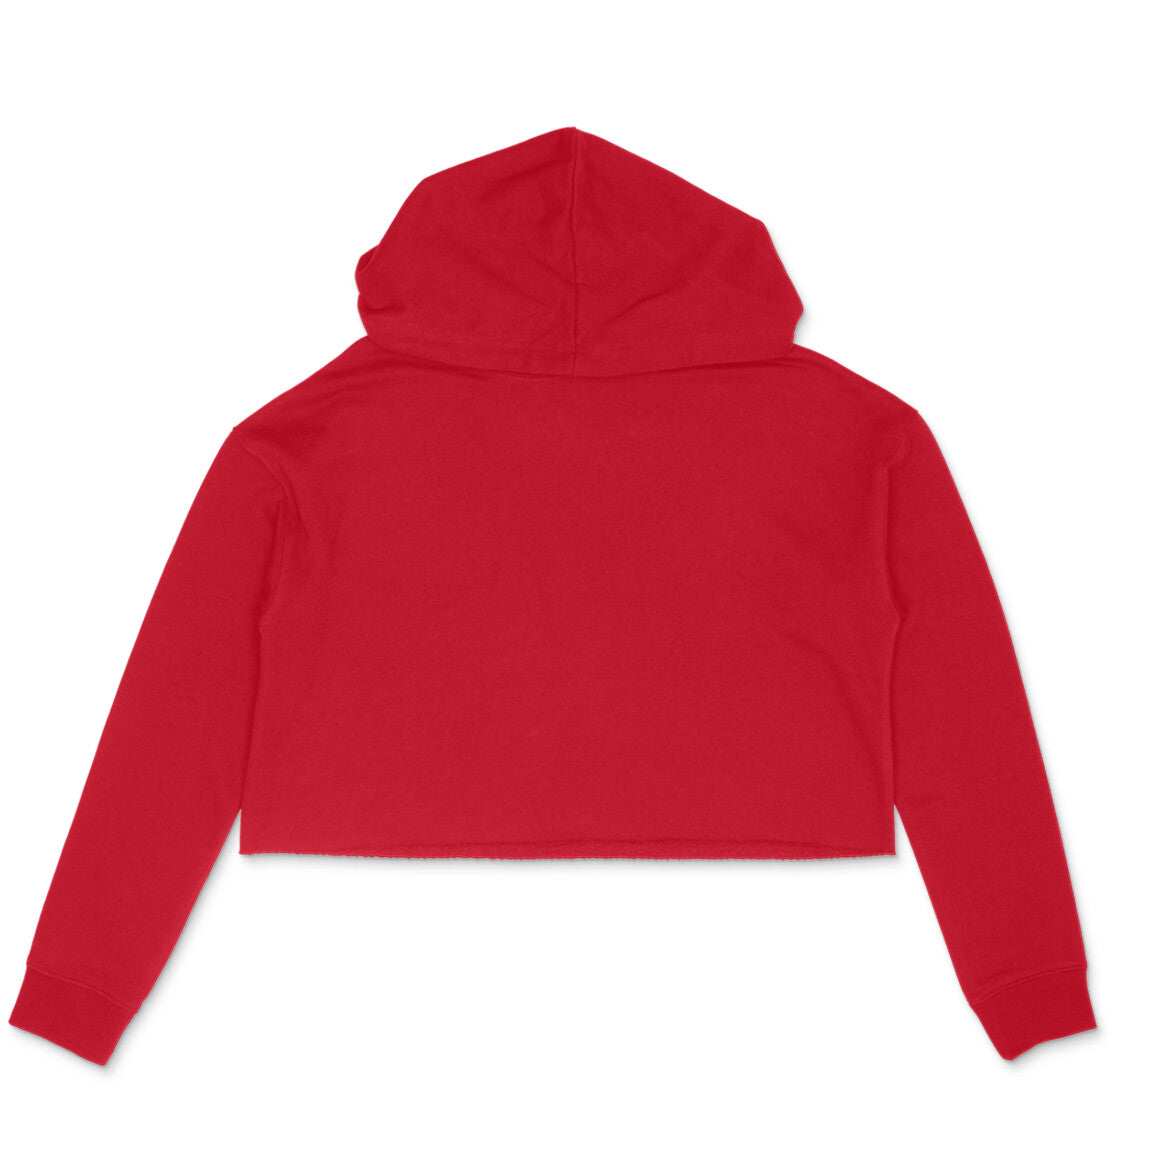 Women's red plain crop hoodie